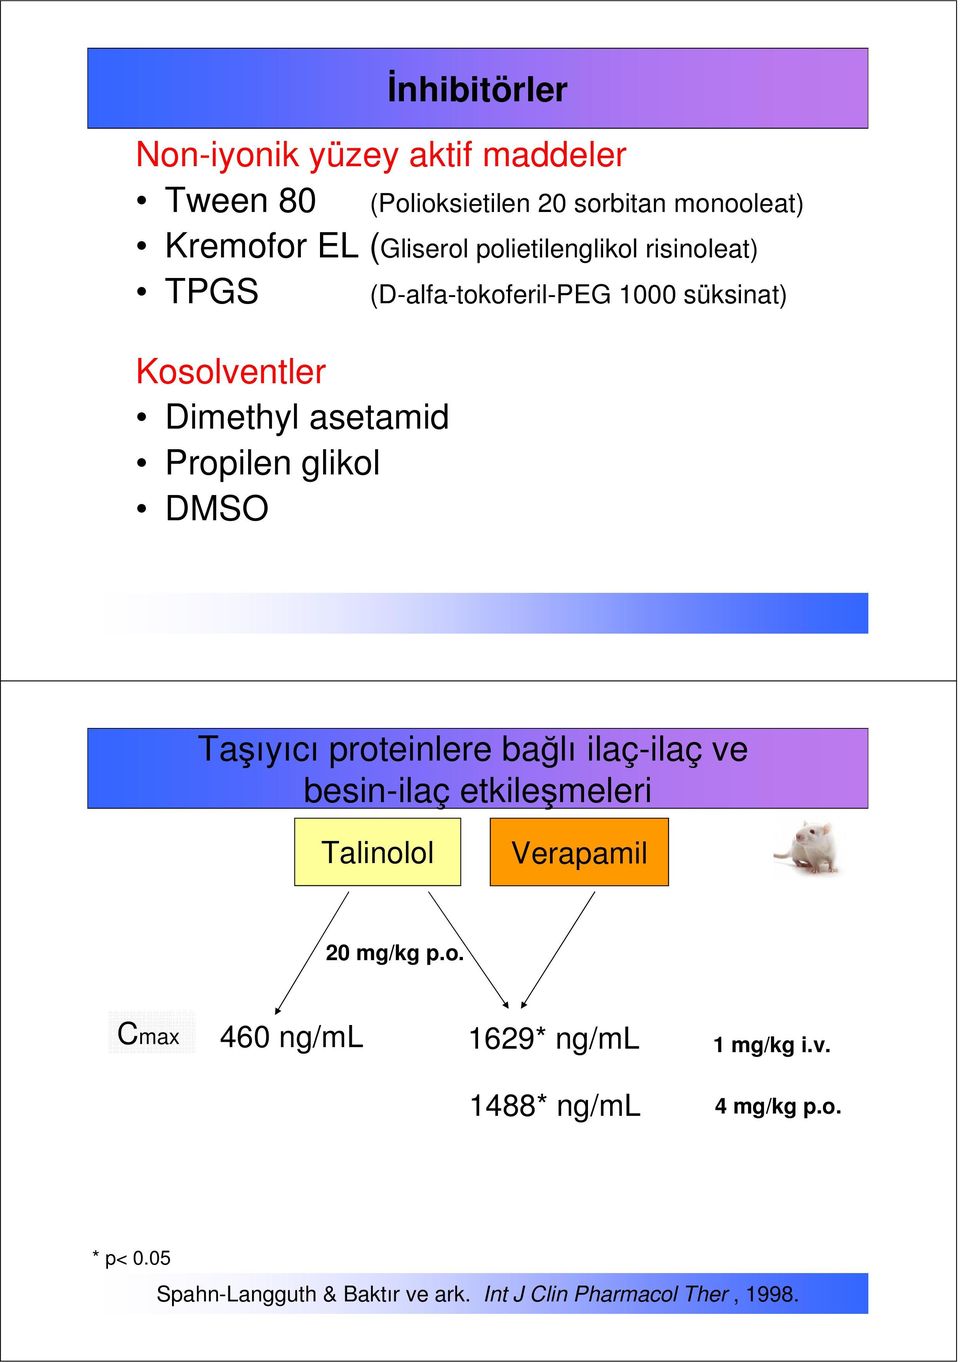 Taşıyıcı proteinlere bağlı ilaç-ilaç ve besin-ilaç etkileşmeleri Talinolol Verapamil 20 mg/kg p.o. Cmax 460 ng/ml 1629* ng/ml 1488* ng/ml 1 mg/kg i.